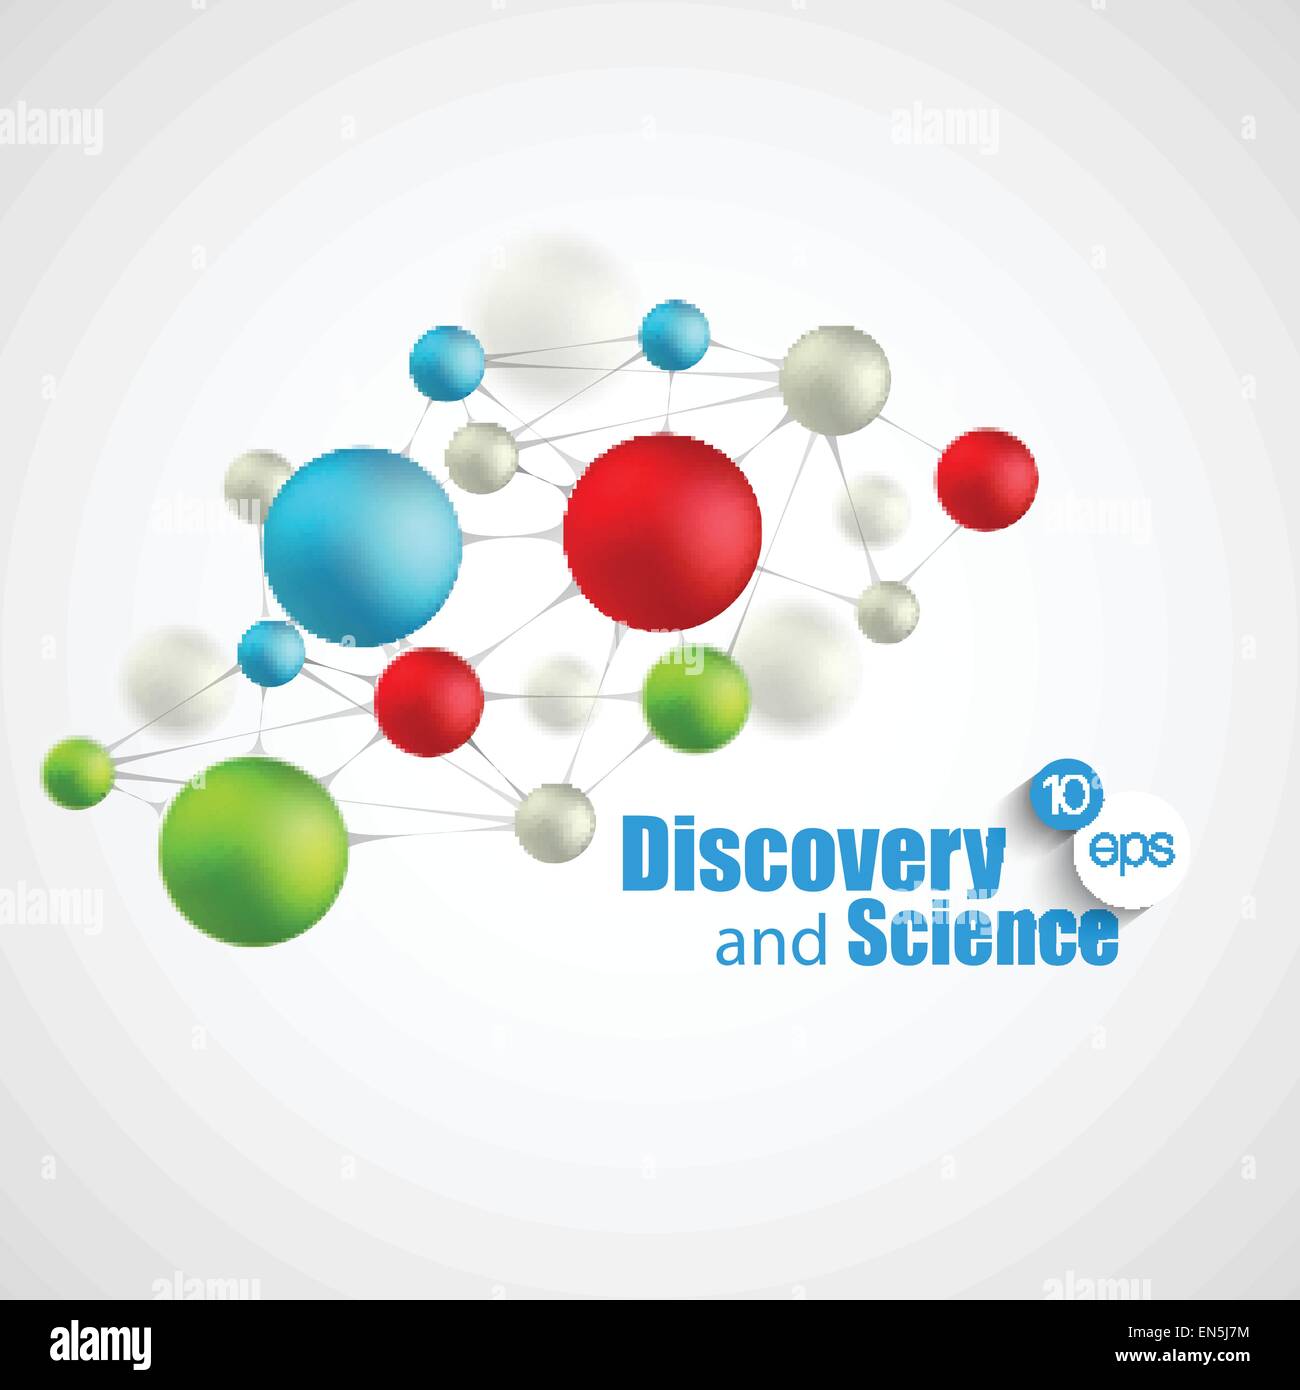 Chemische Wissenschaft und Entdeckung. Vektor-Illustration. Molekül und Fläschchen Stock Vektor